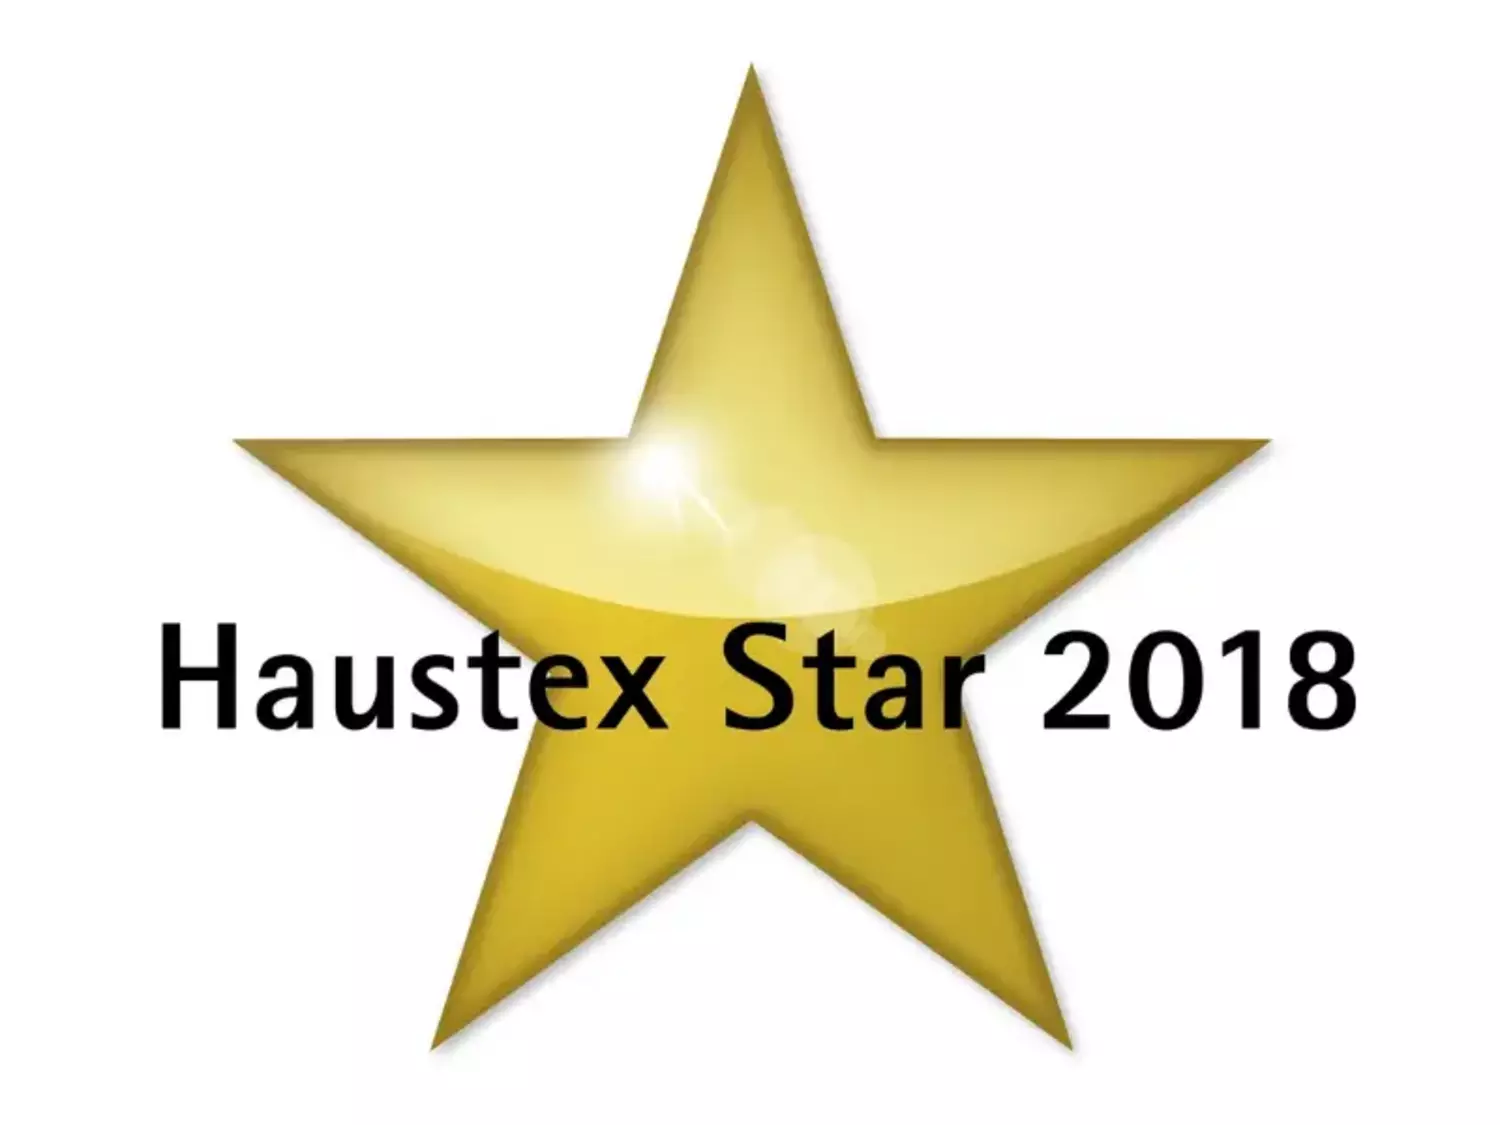 Betten Weissenbach - Haustex Star 2018 